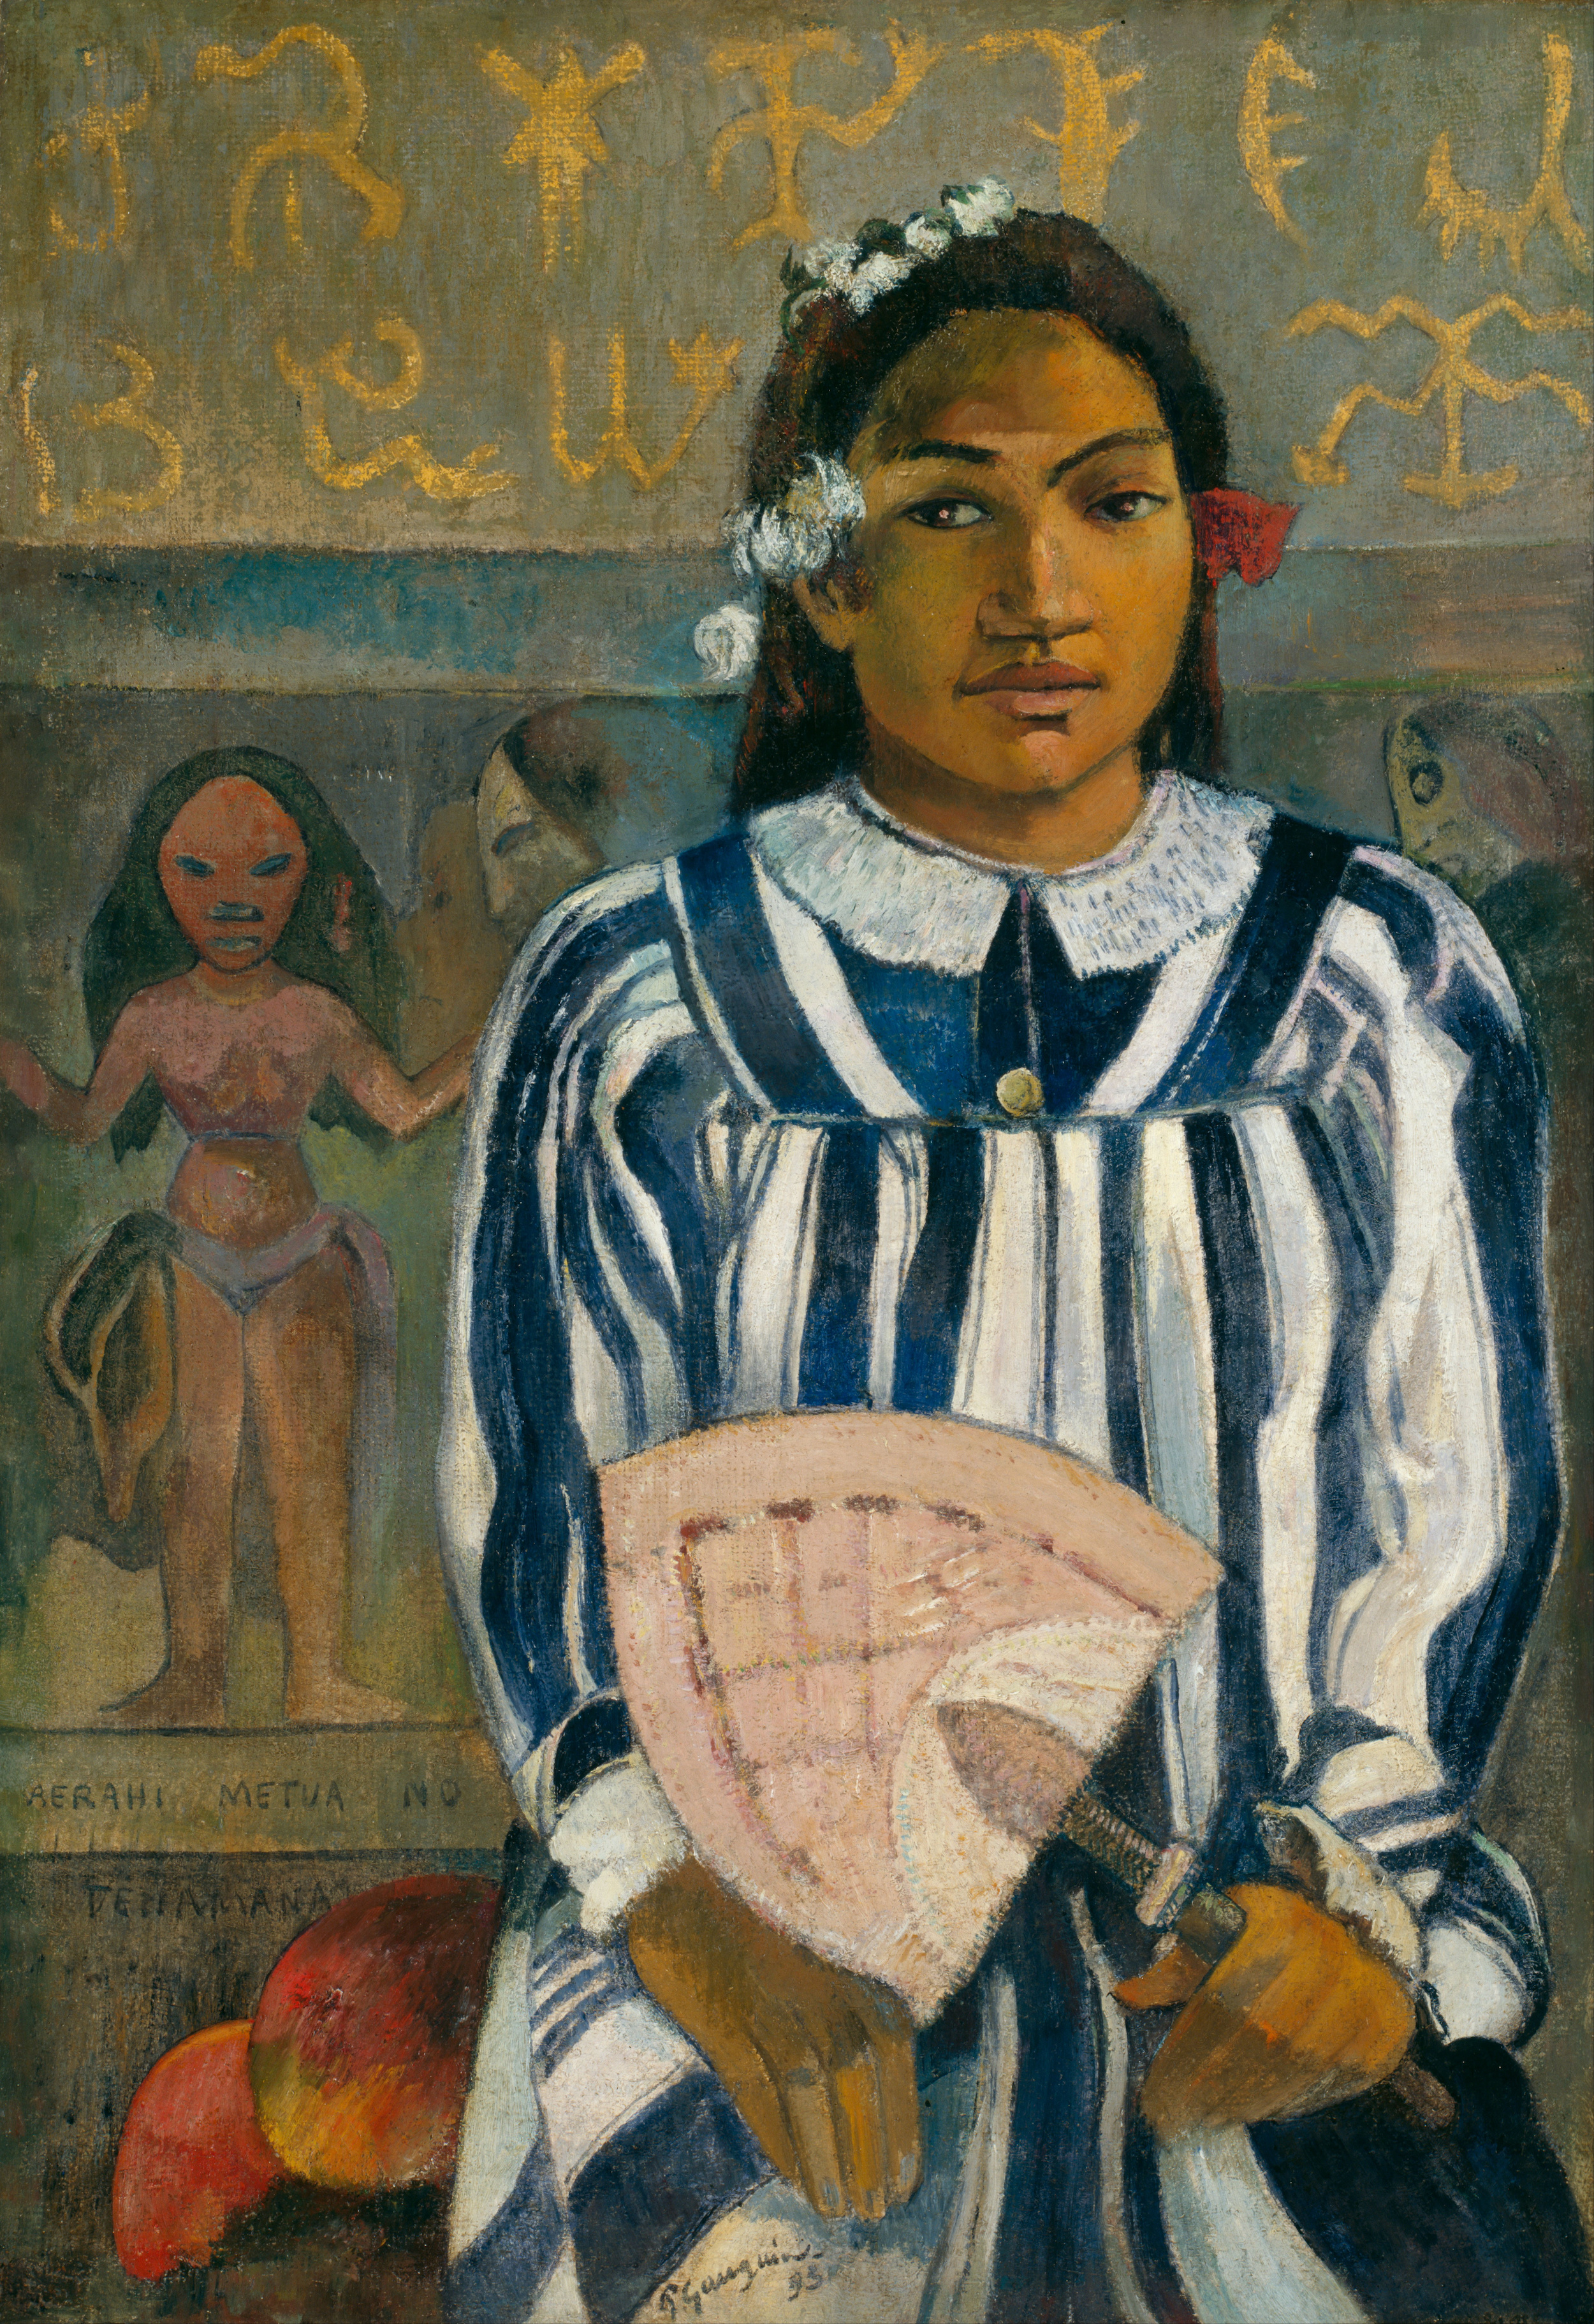 Merahi metua no Tehamana by Paul Gauguin - 1893 - 76.3 × 54.3 cm Art Institute of Chicago